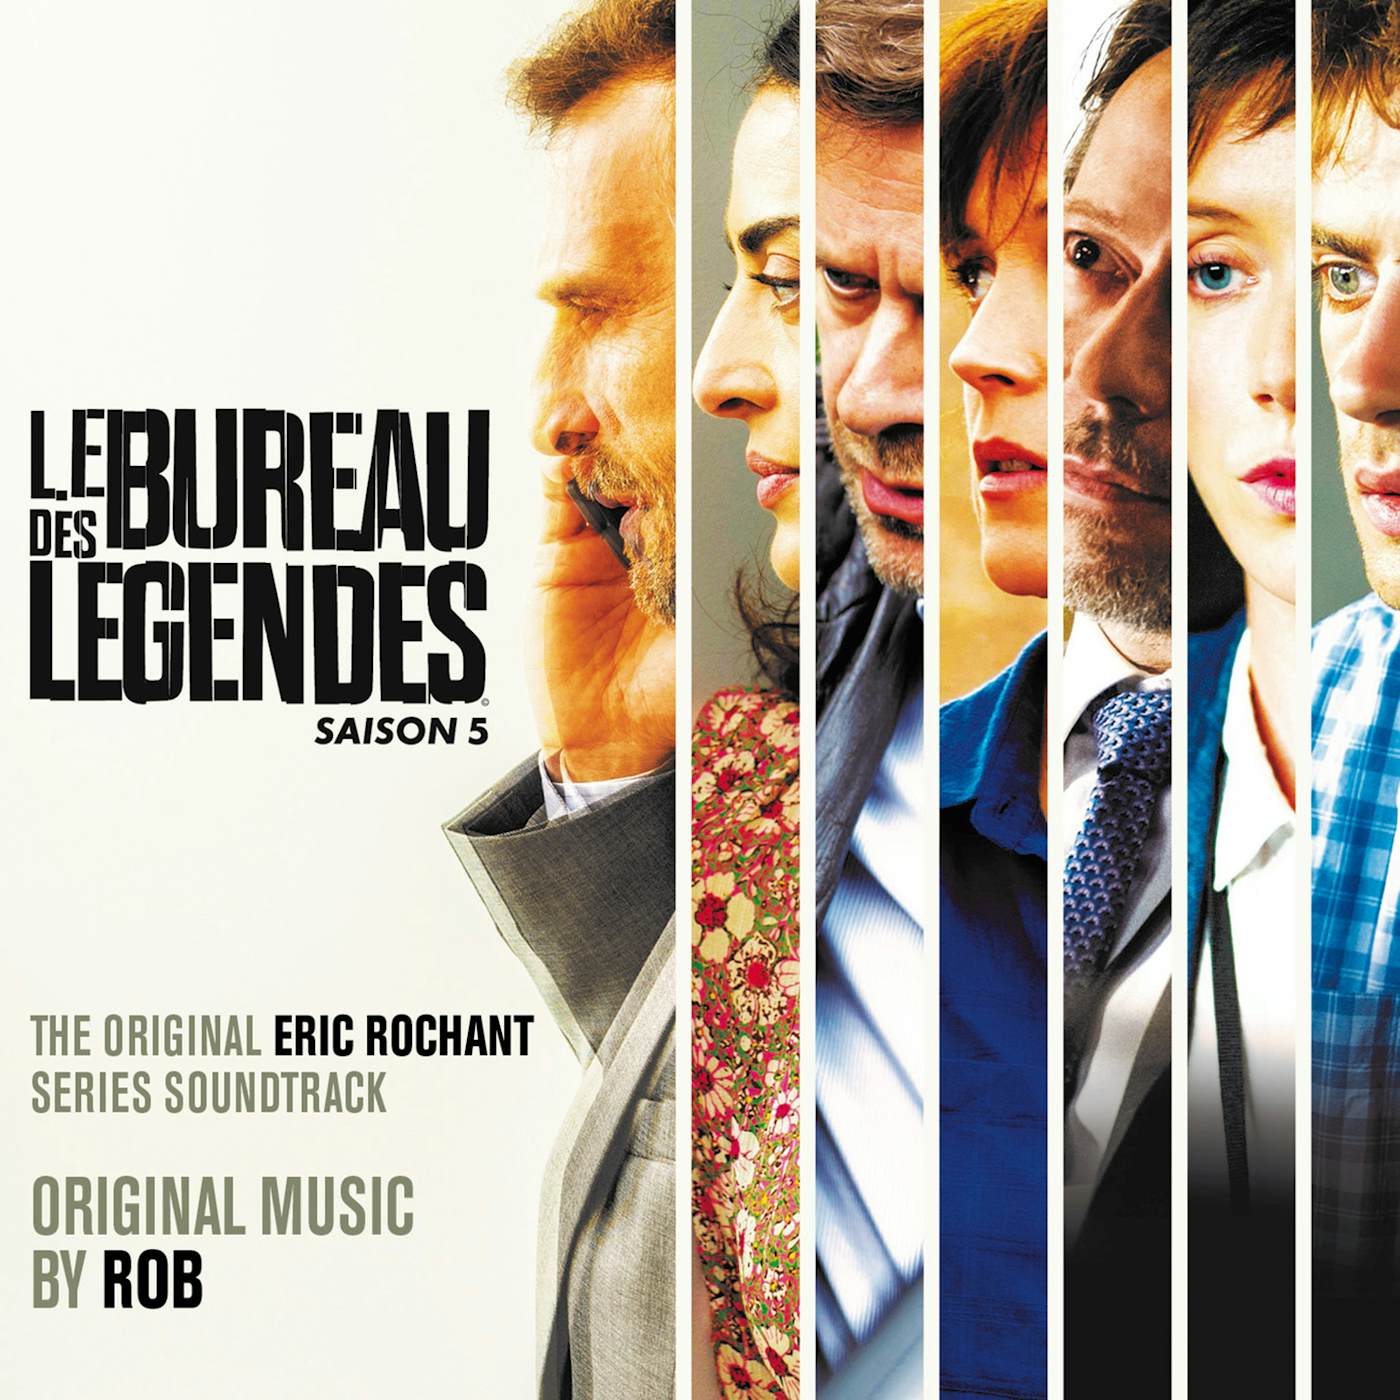 Rob LE BUREAU DES LEGENDES - SAISON 5 / Original Soundtrack Vinyl Record